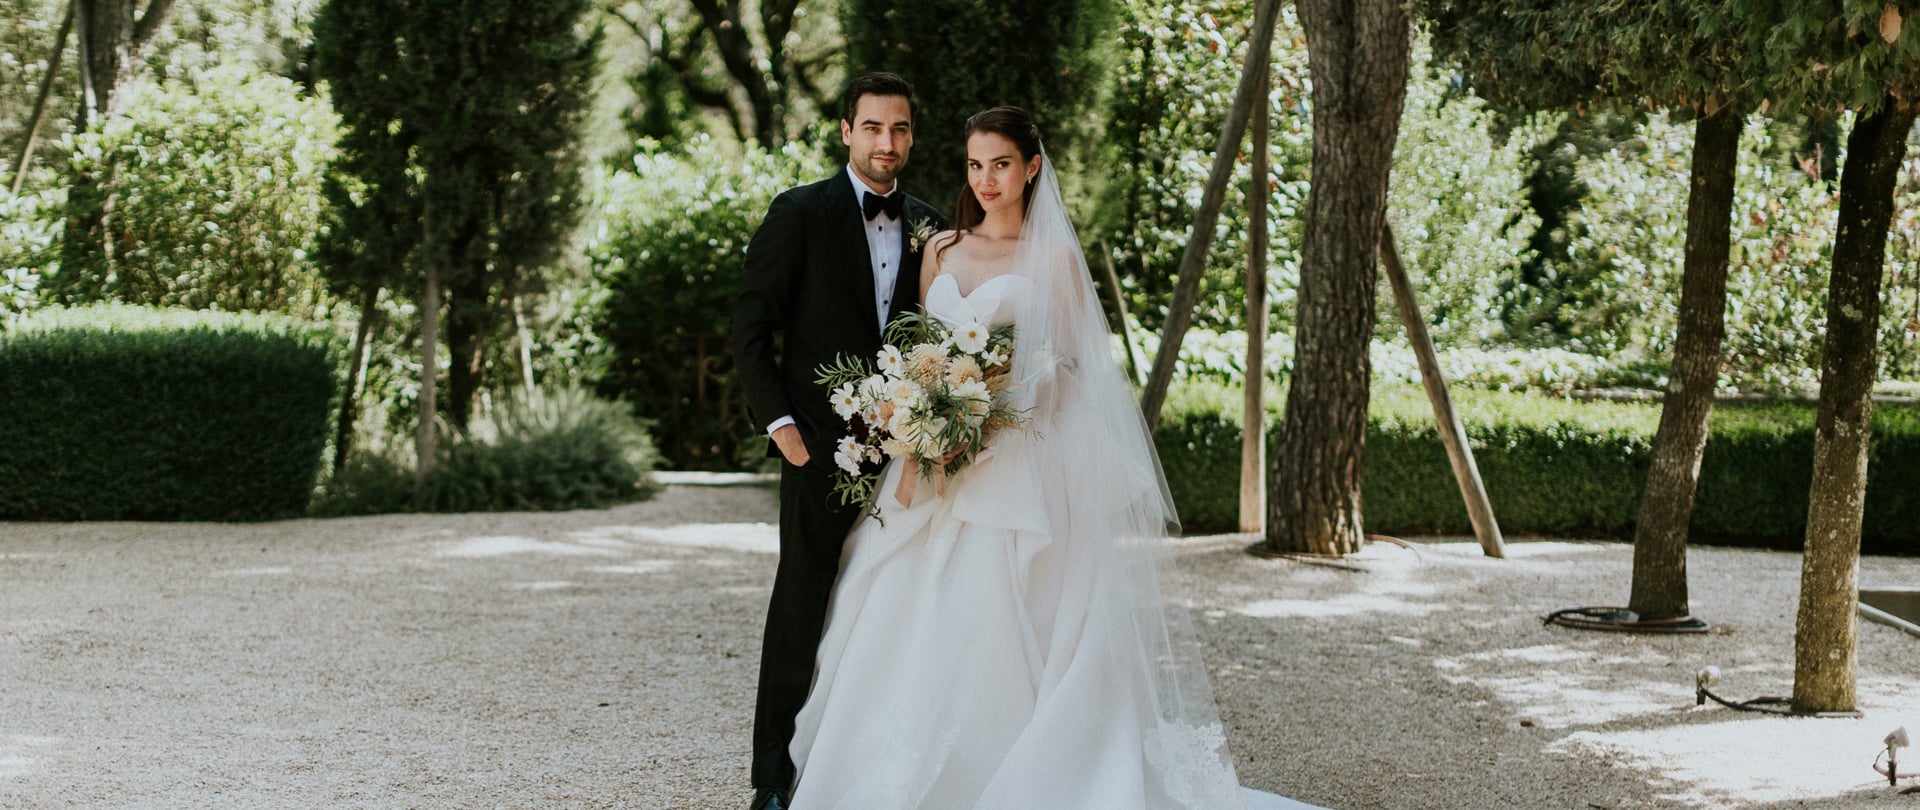 Meghan & Danny Wedding Video Filmed atTuscany,Italy